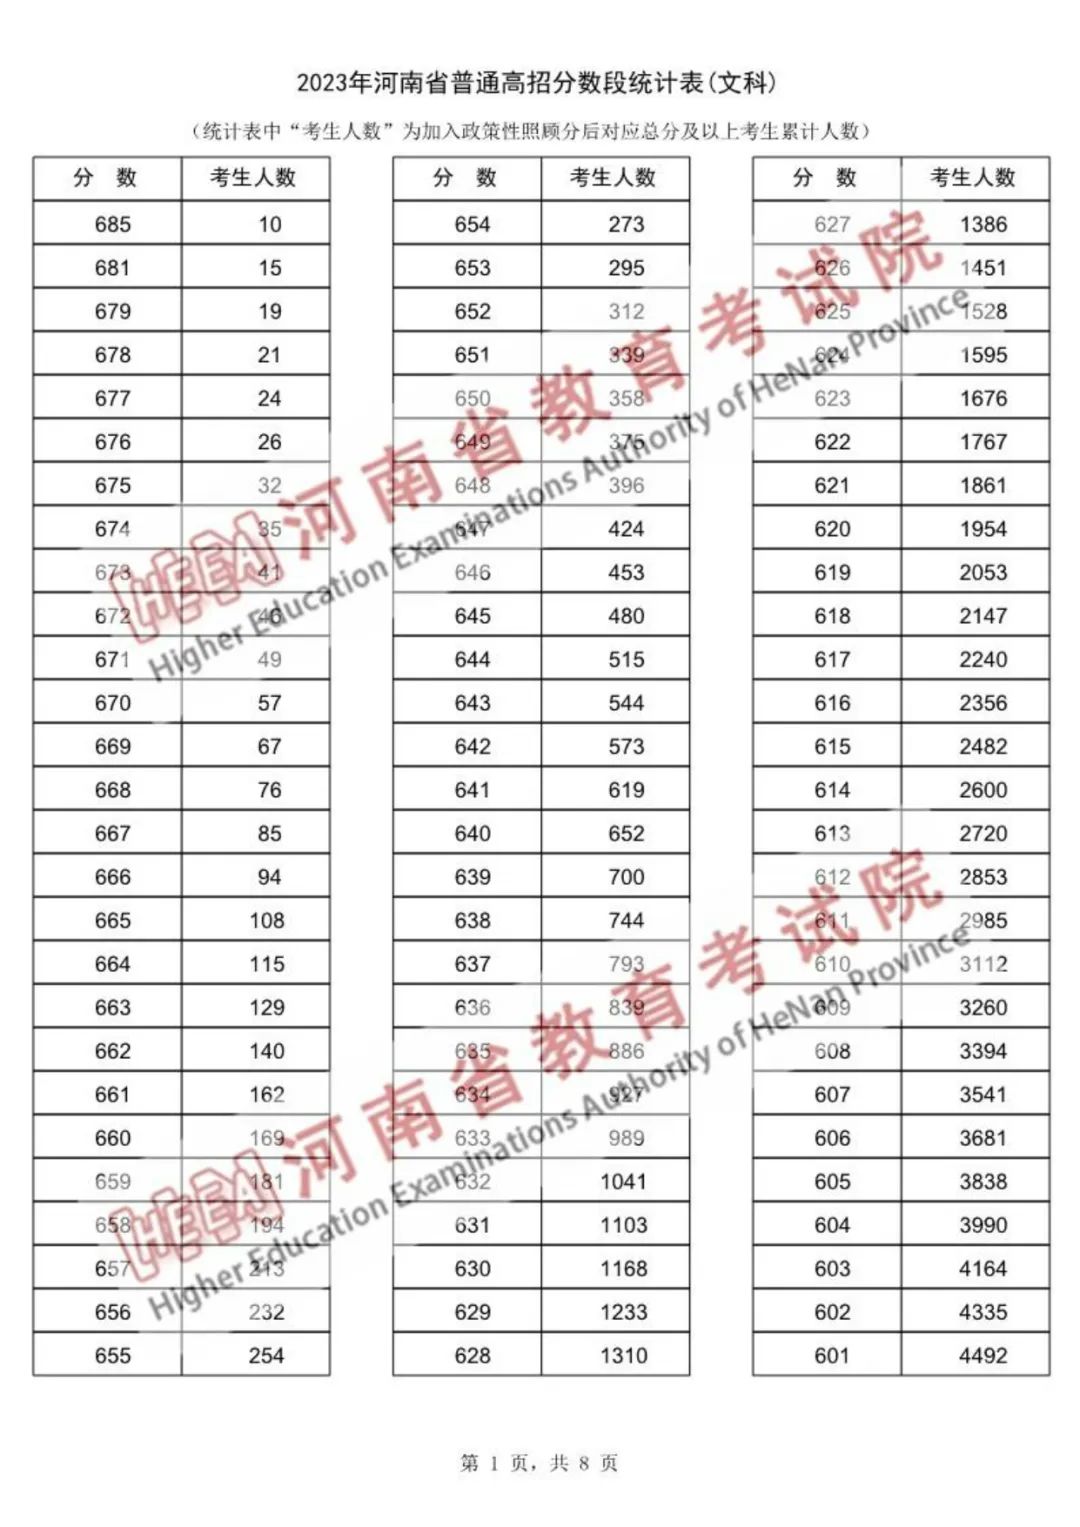 河南2023年高考分段表文科生成绩分布